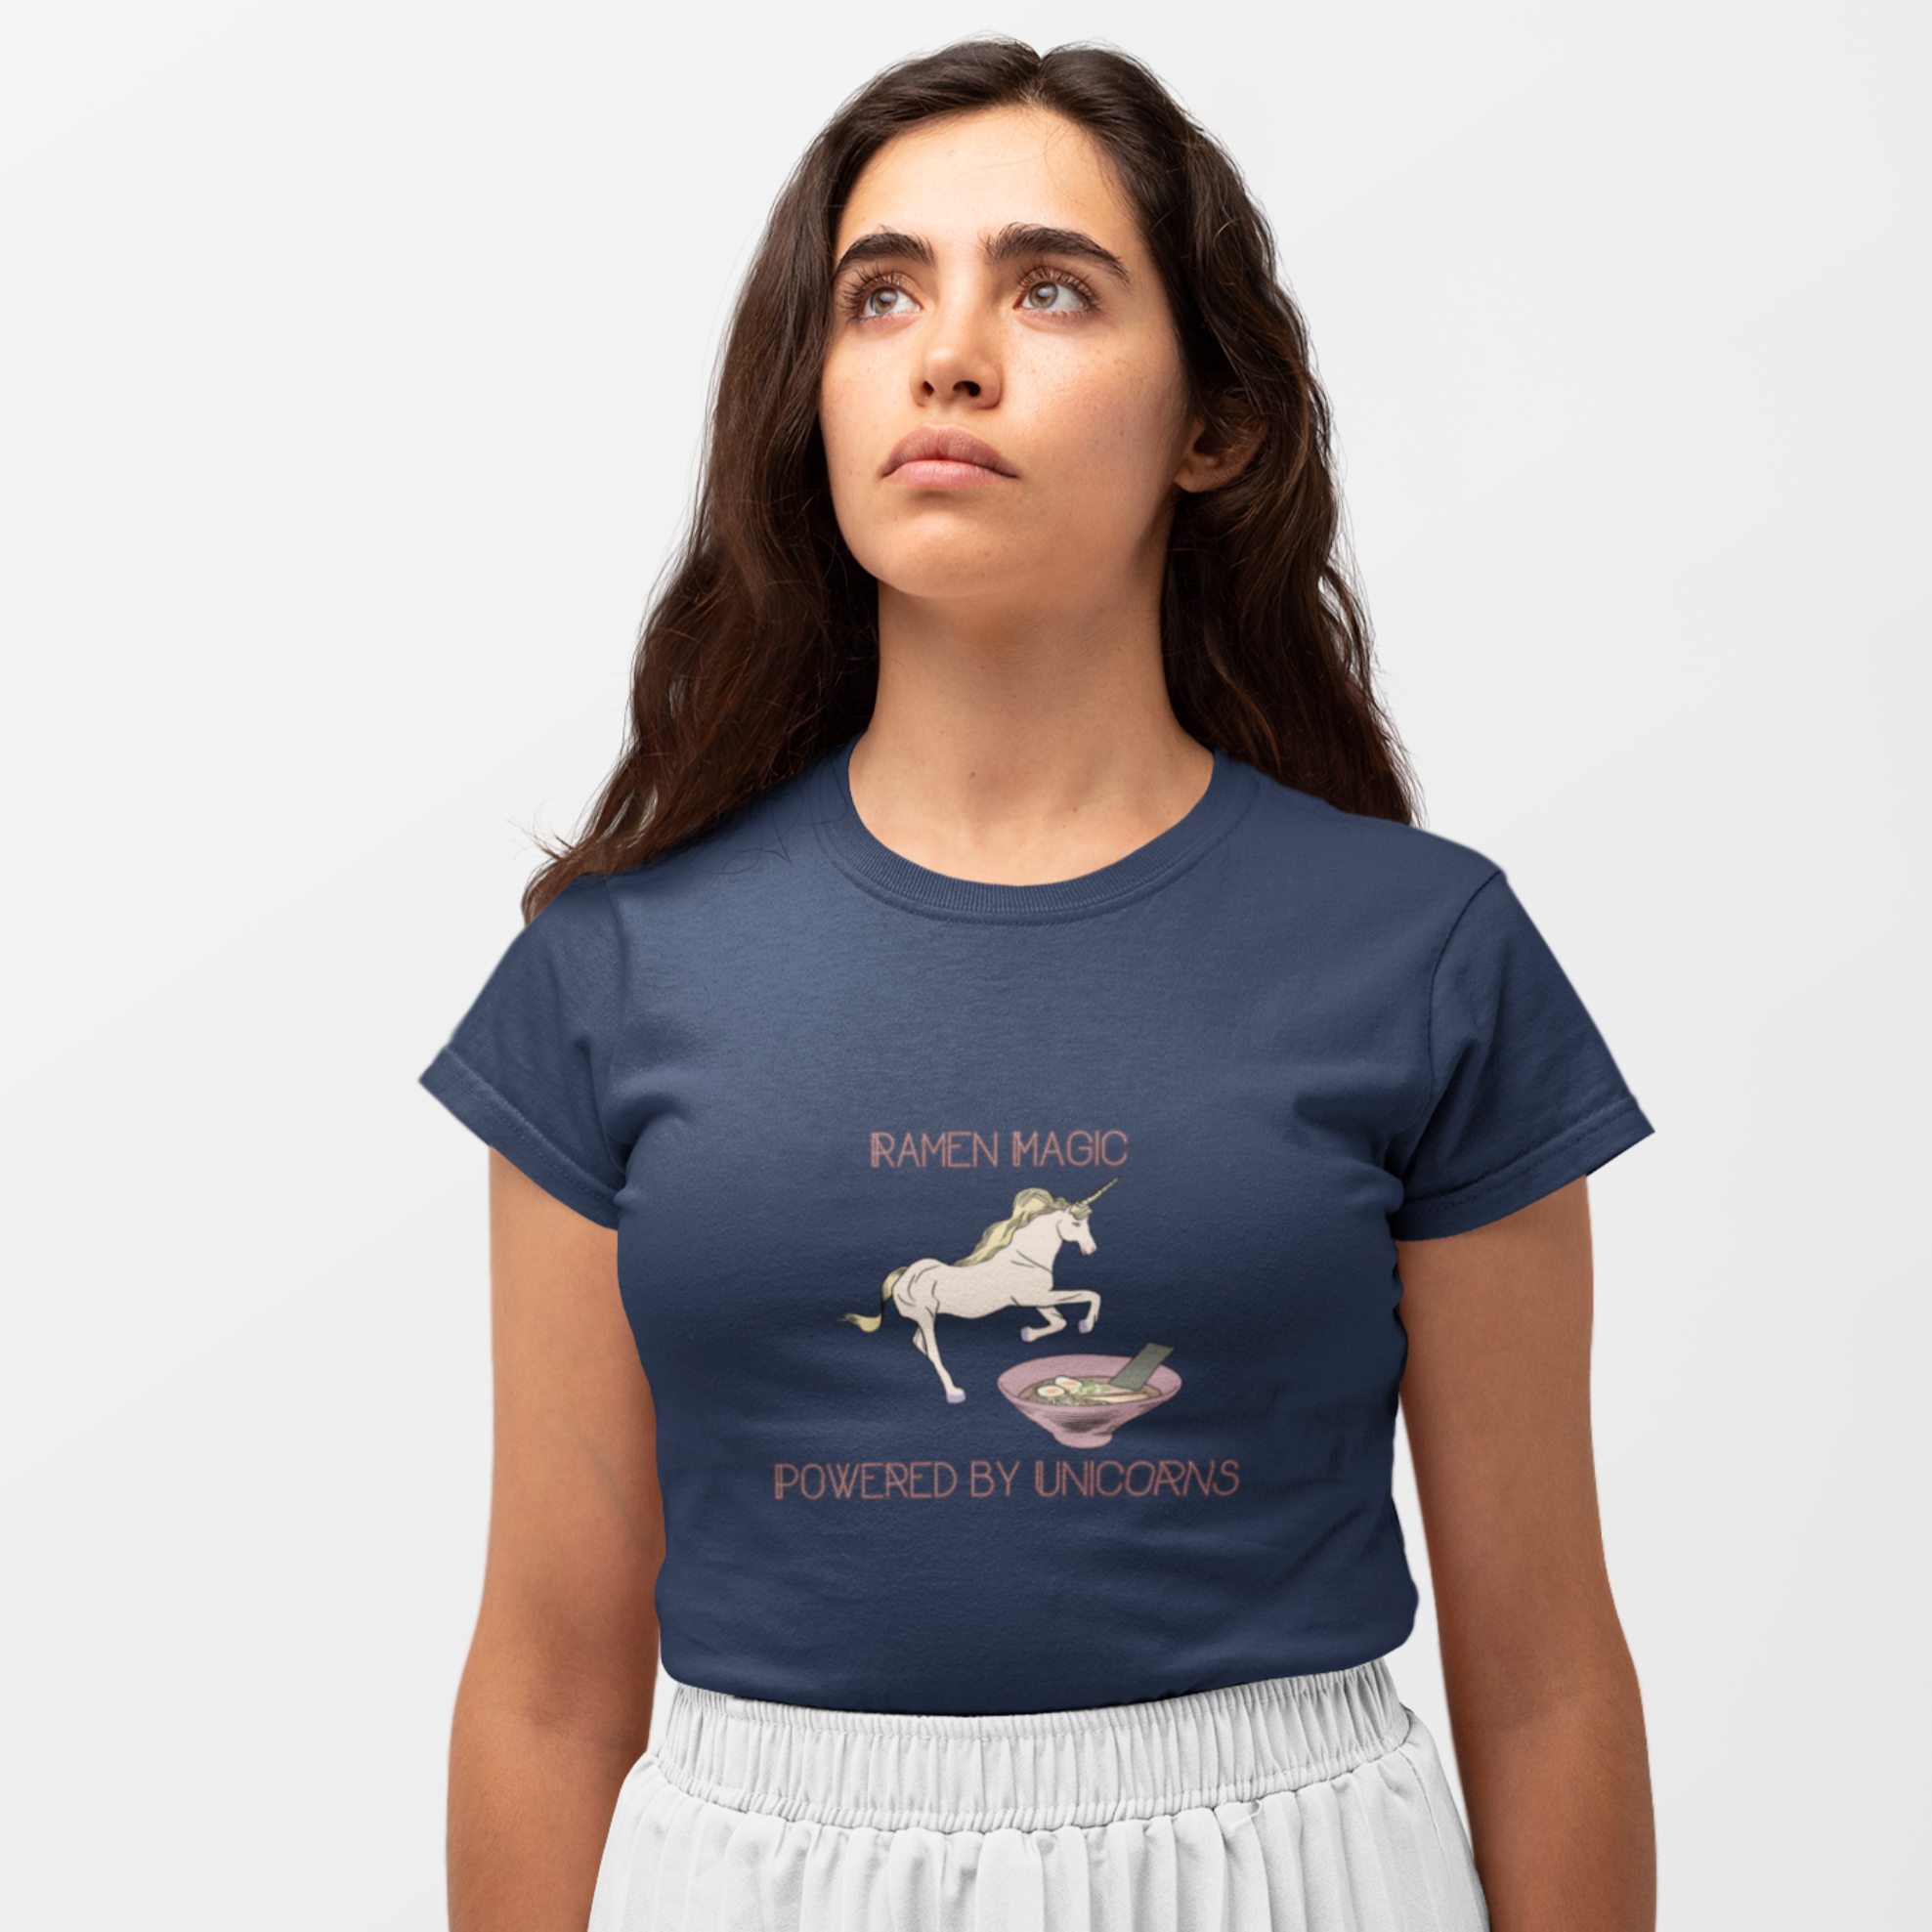 Ramen T-shirt: Magical Ramen Journey with Unicorn Delights - Japanese Shirt, Foodie Shirt, Ramen Art